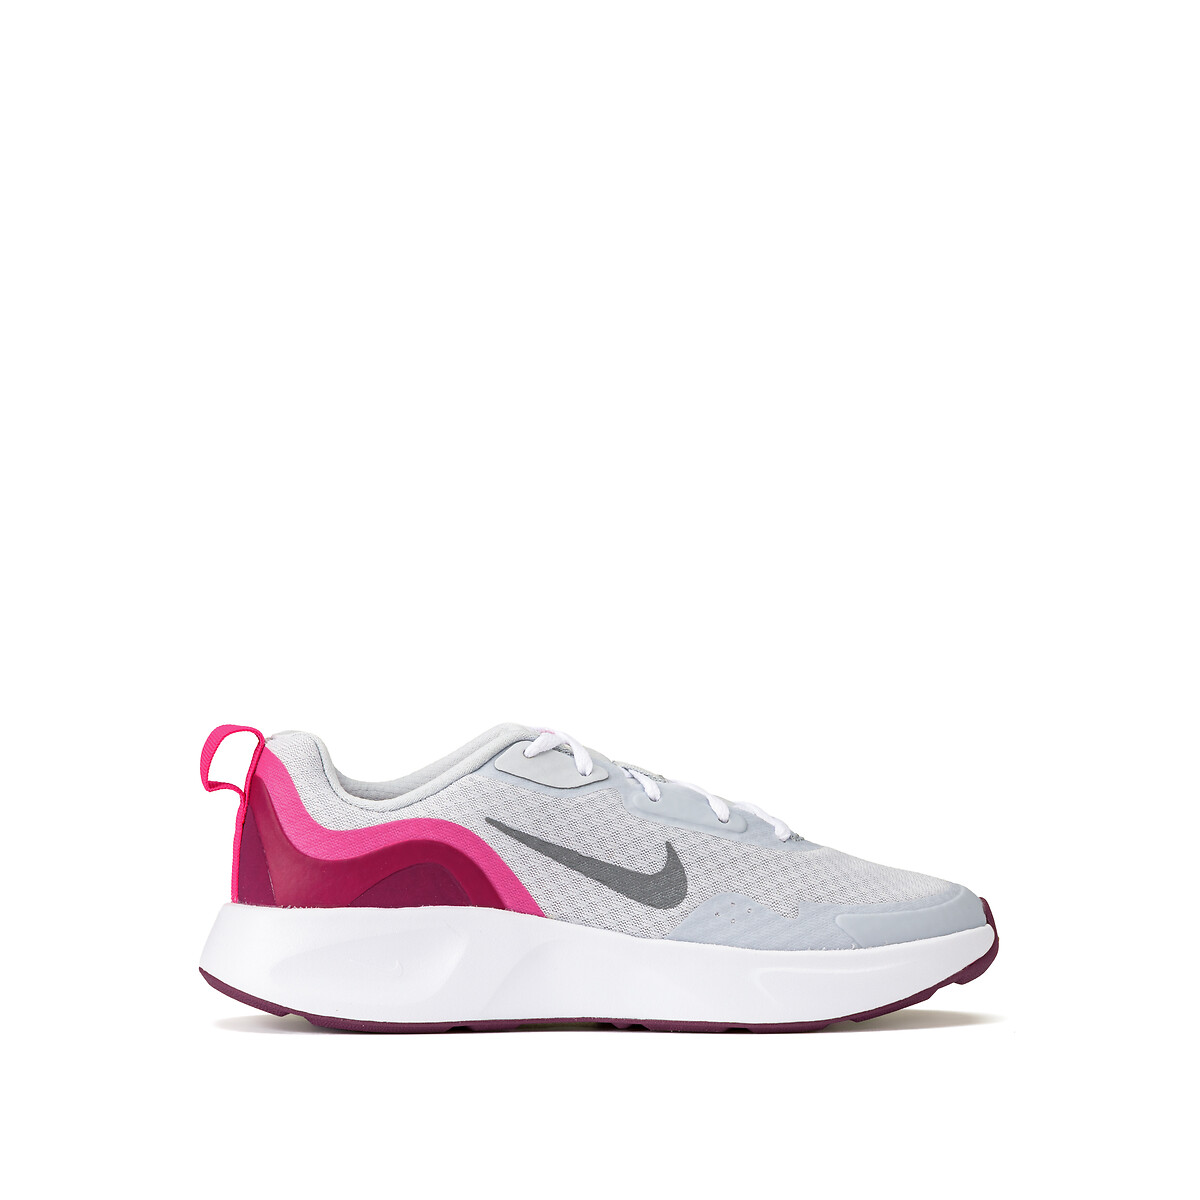 تنقيع الشماغ Chaussures Nike fille | La Redoute تنقيع الشماغ